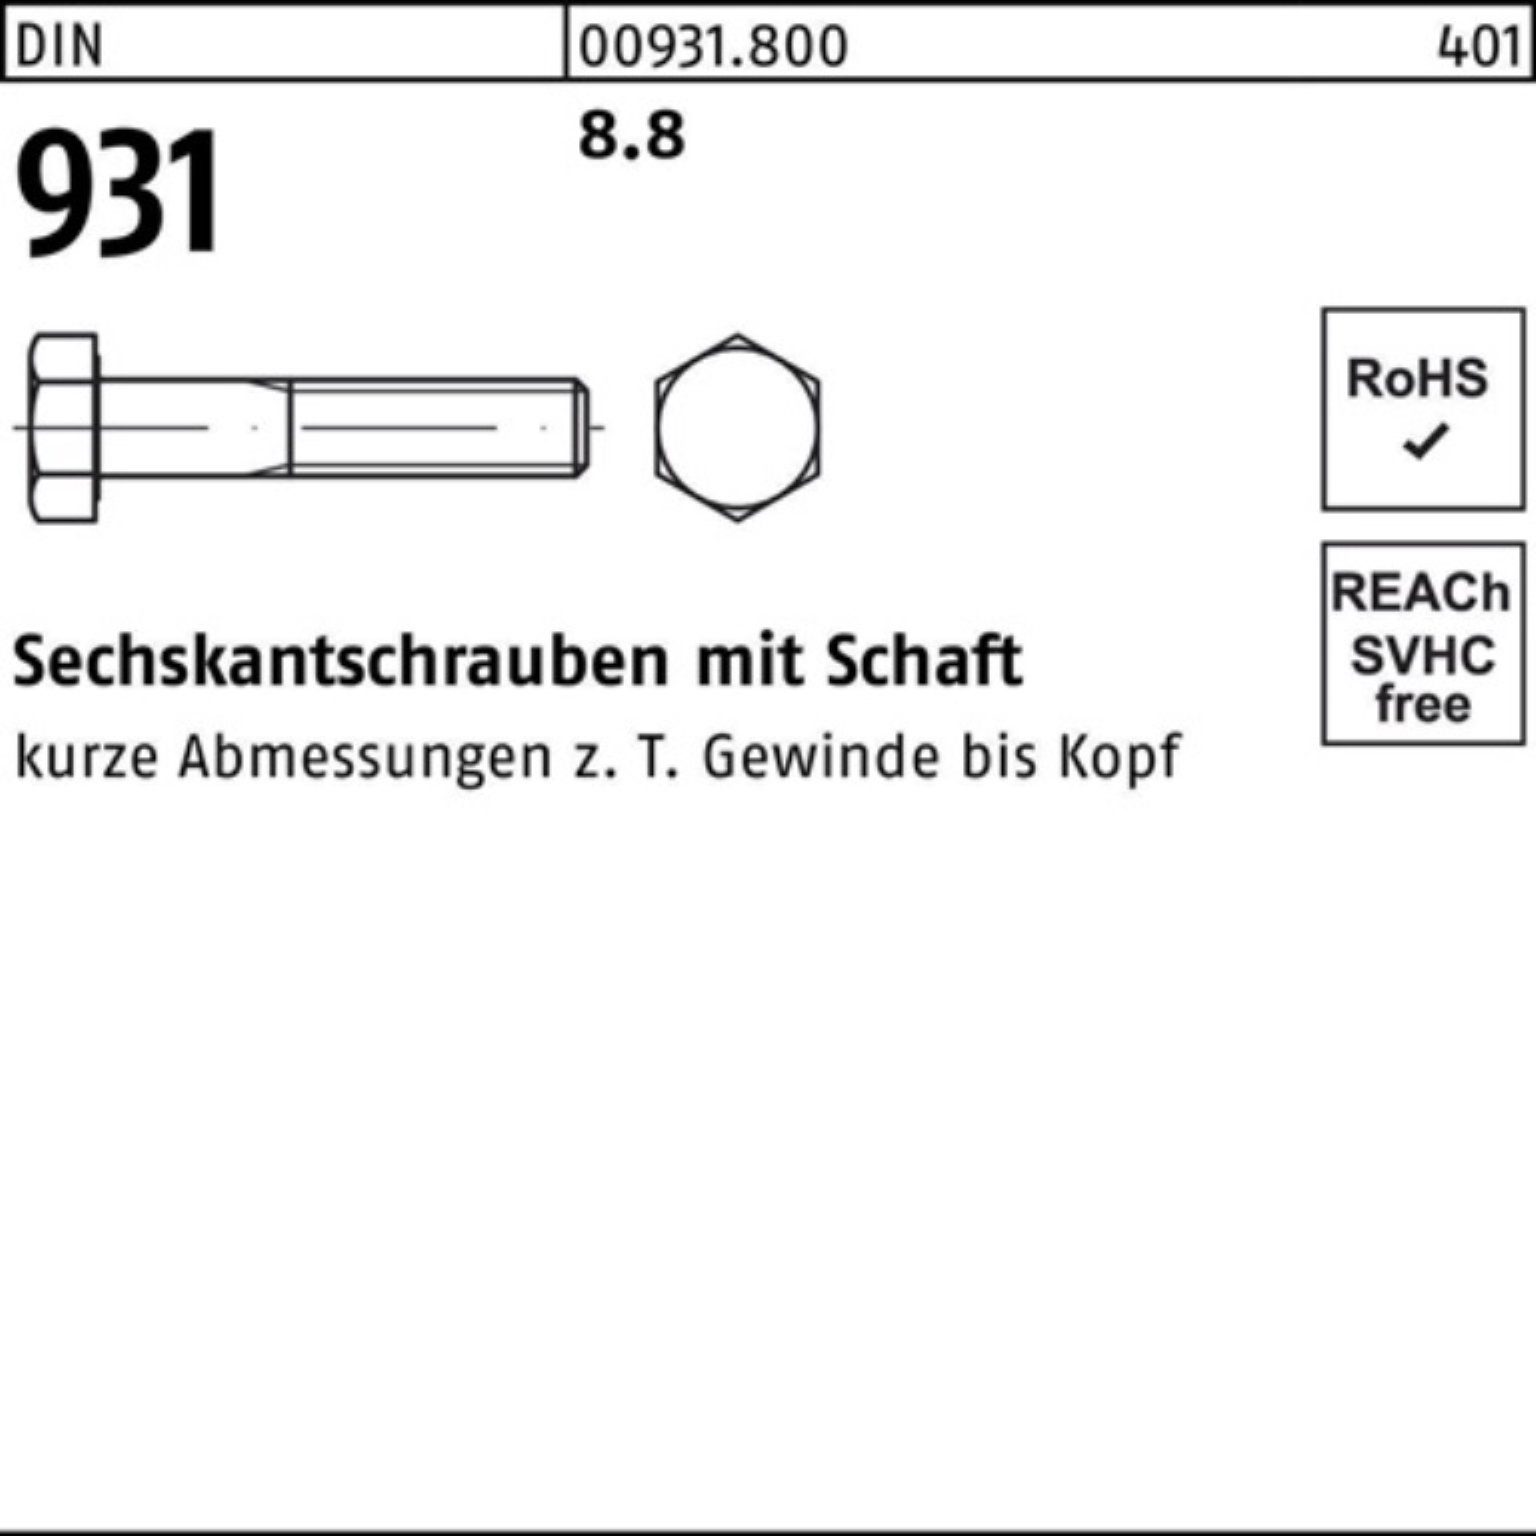 Schaft Reyher 100er Stück 931 Sechskantschraube DIN DIN 90 Pack 8.8 9 1 Sechskantschraube M30x